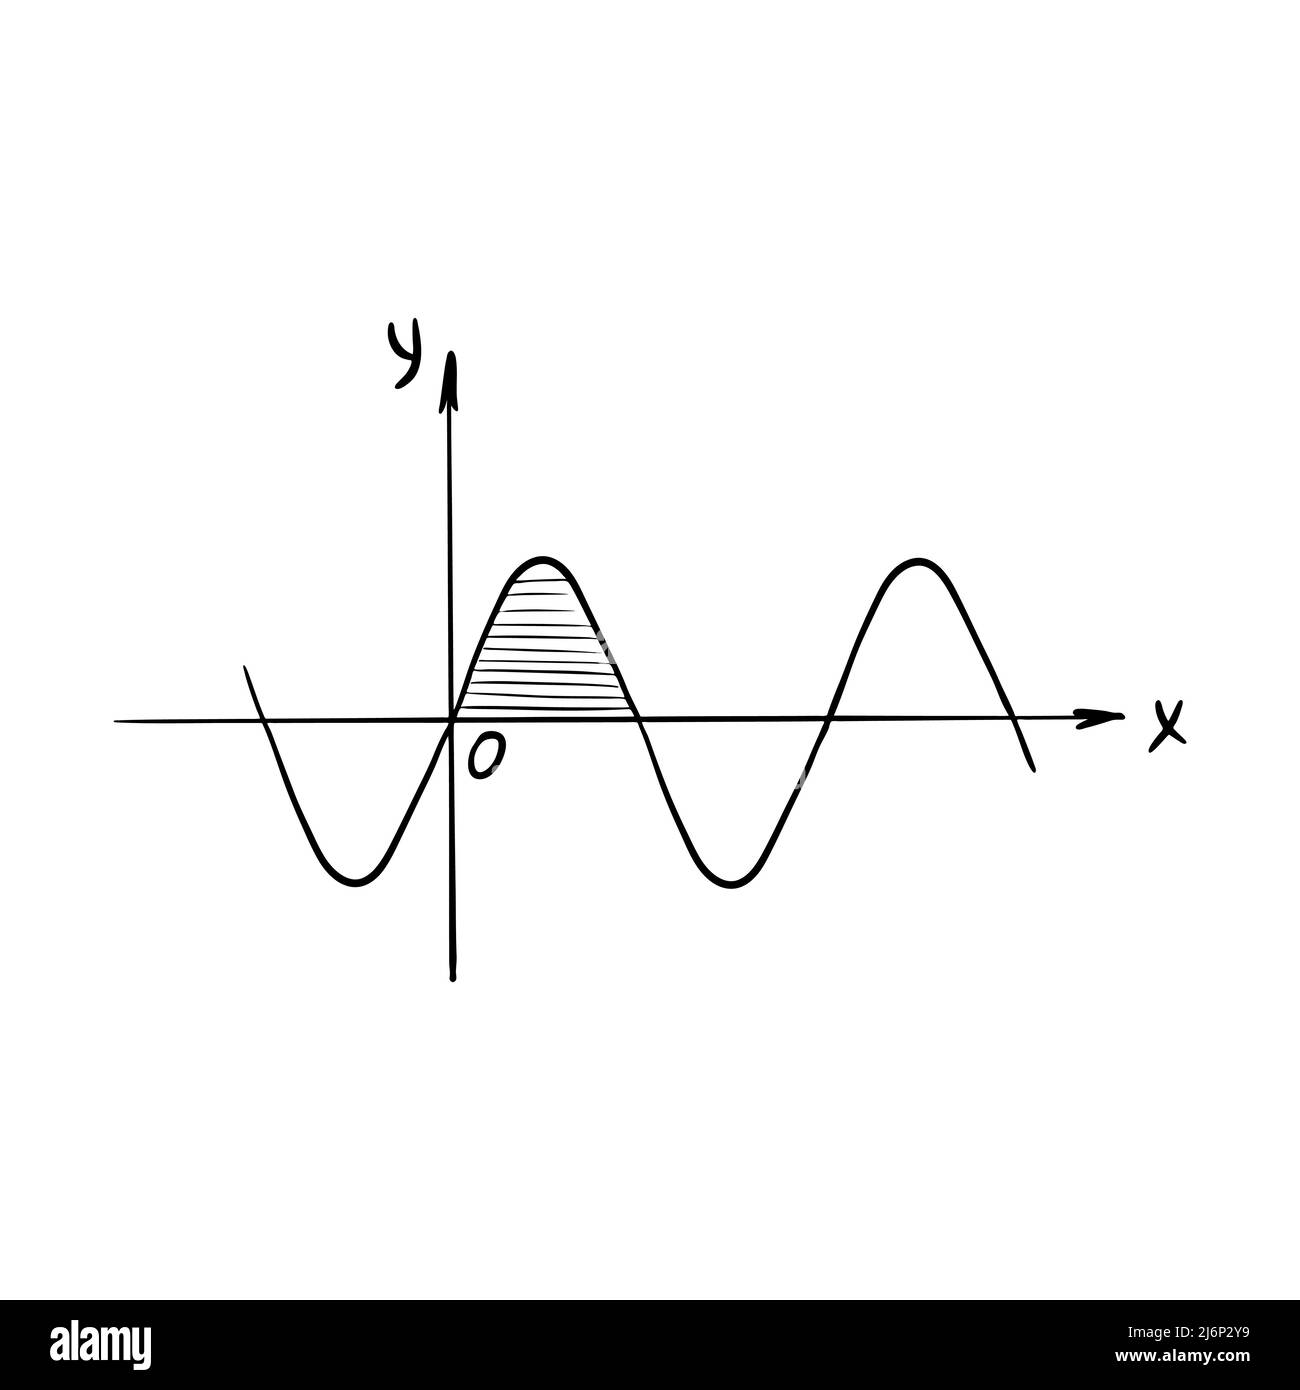 Schizzo del grafico dell'onda sinusoidale. Sinusoide. Grafico di una funzione matematica. Un semplice disegno disegnato a mano, isolato su bianco. Illu vettoriale bianco e nero Illustrazione Vettoriale